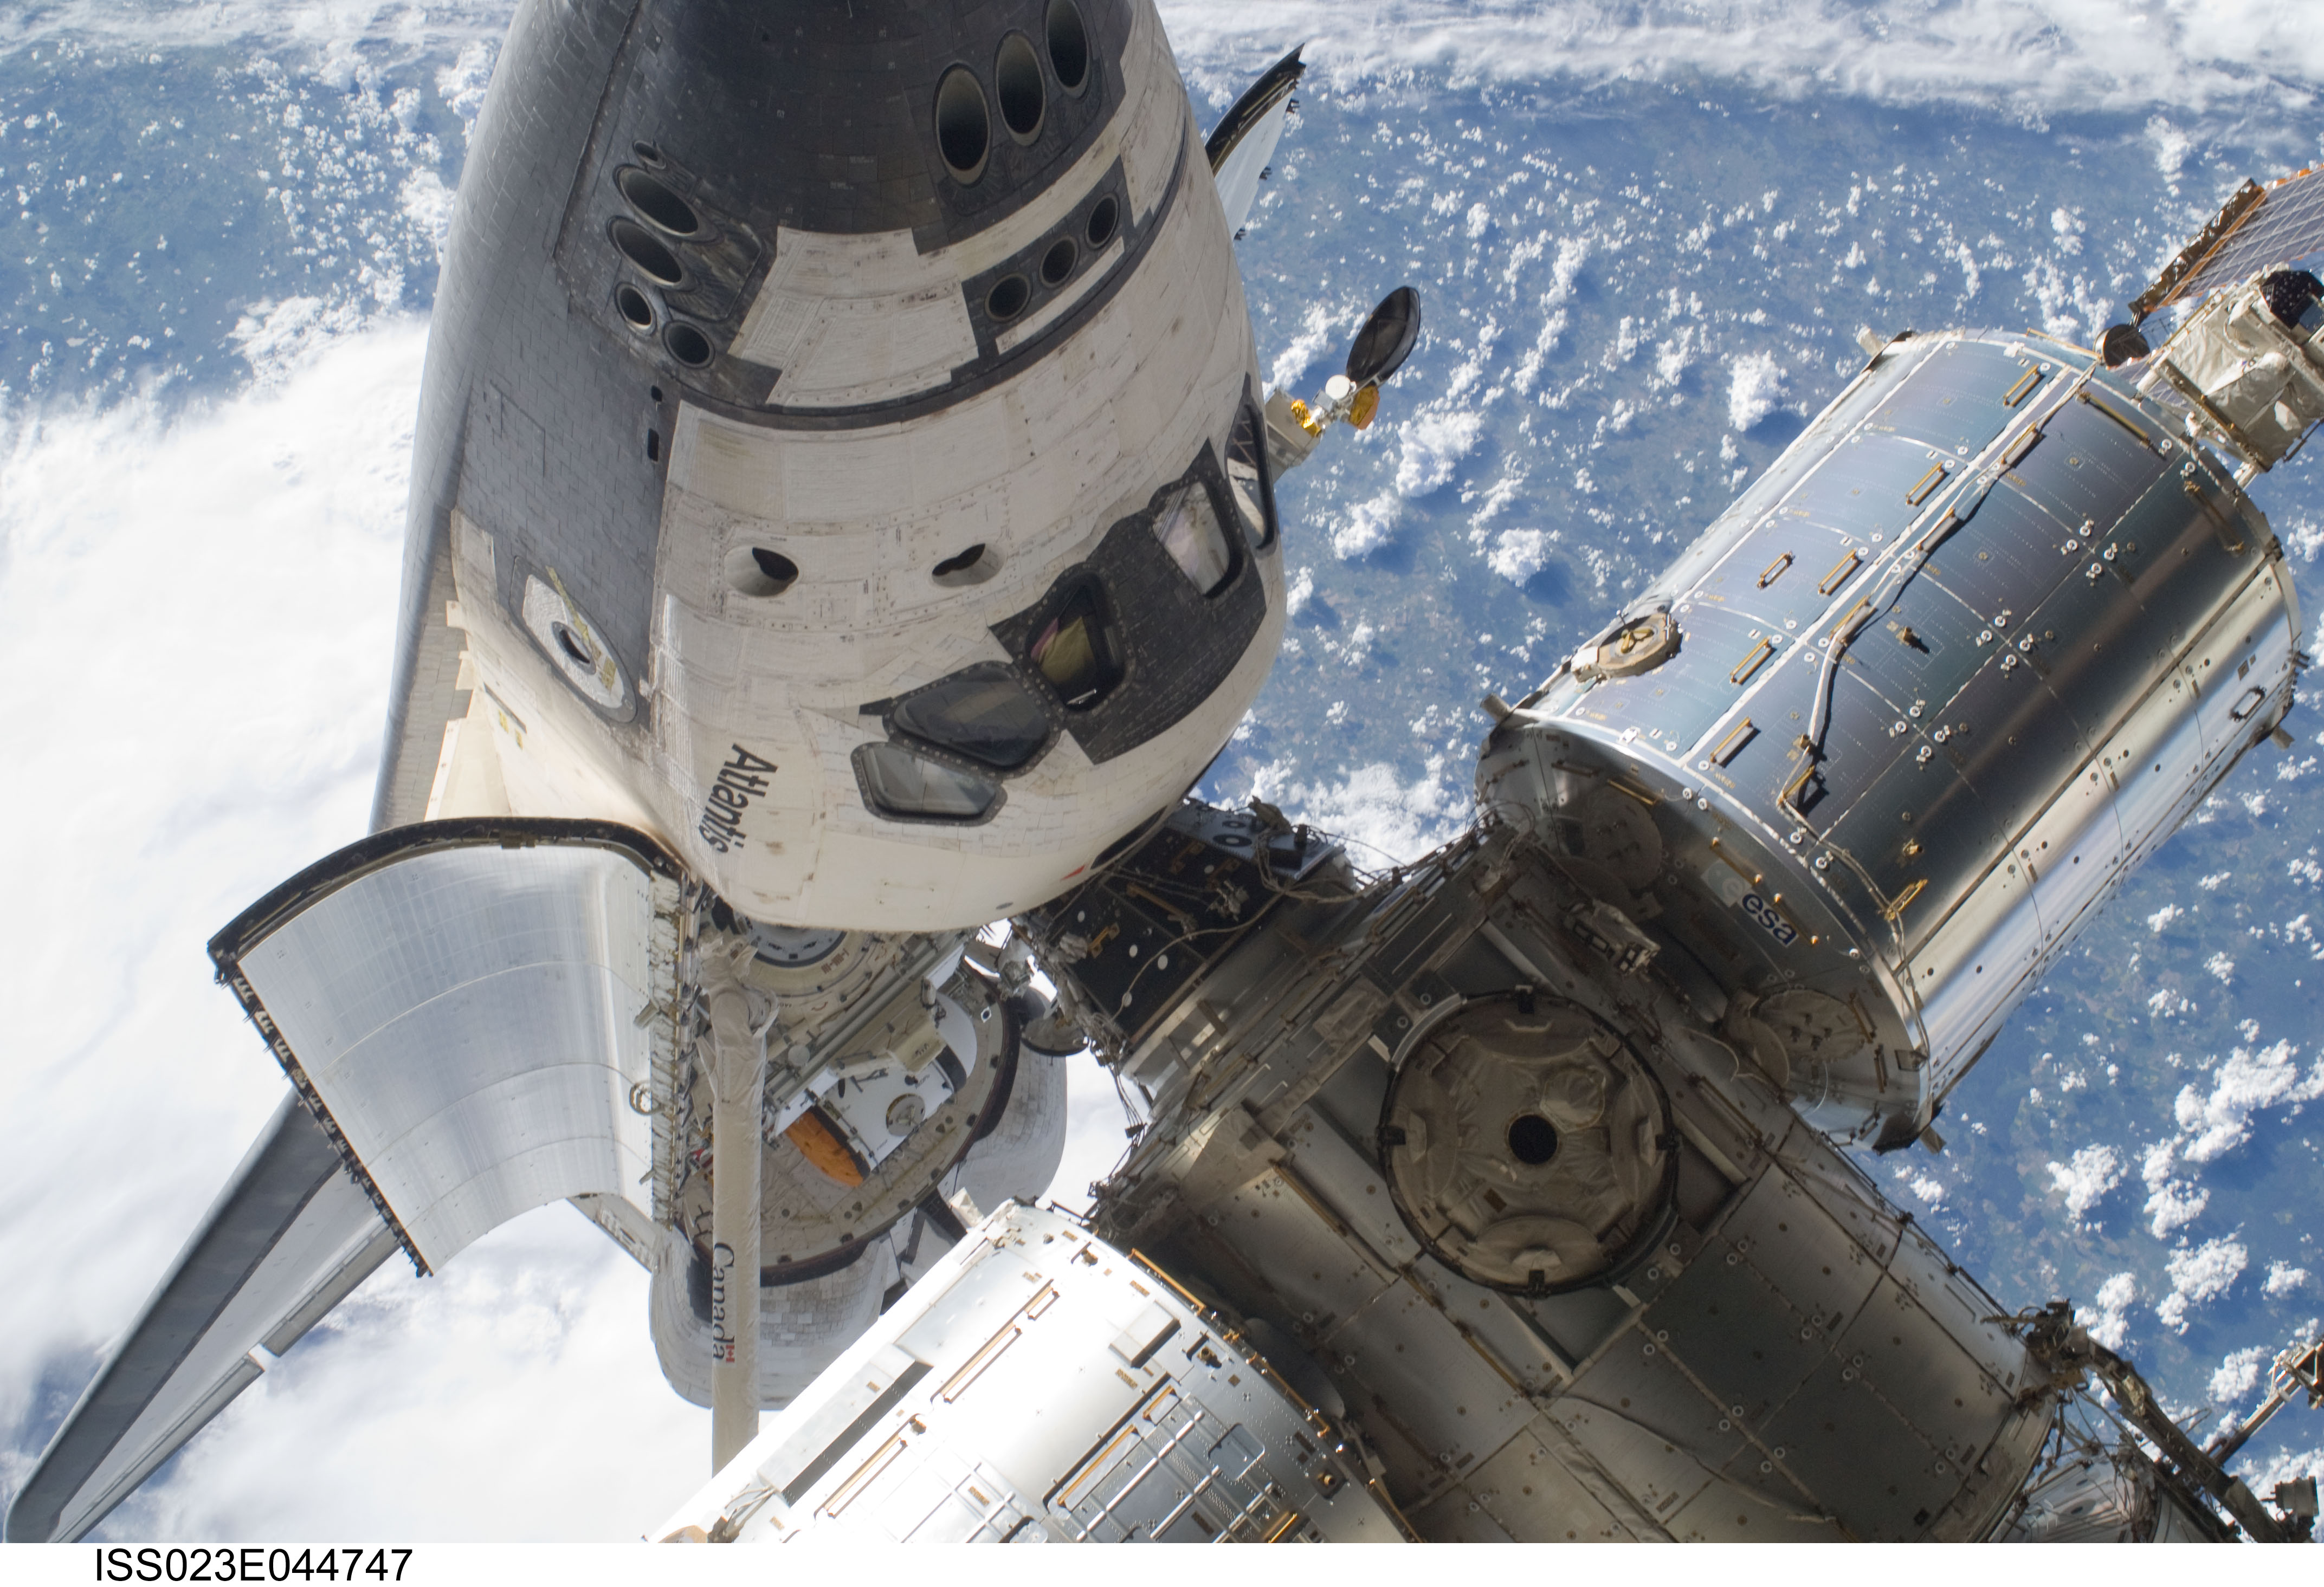 Фото космического корабля в космосе. Спейс шаттл космический корабль. Шаттл Атлантис СТС 132. Спейс шаттл Атлантис. Шаттл "Атлантис" и МКС.